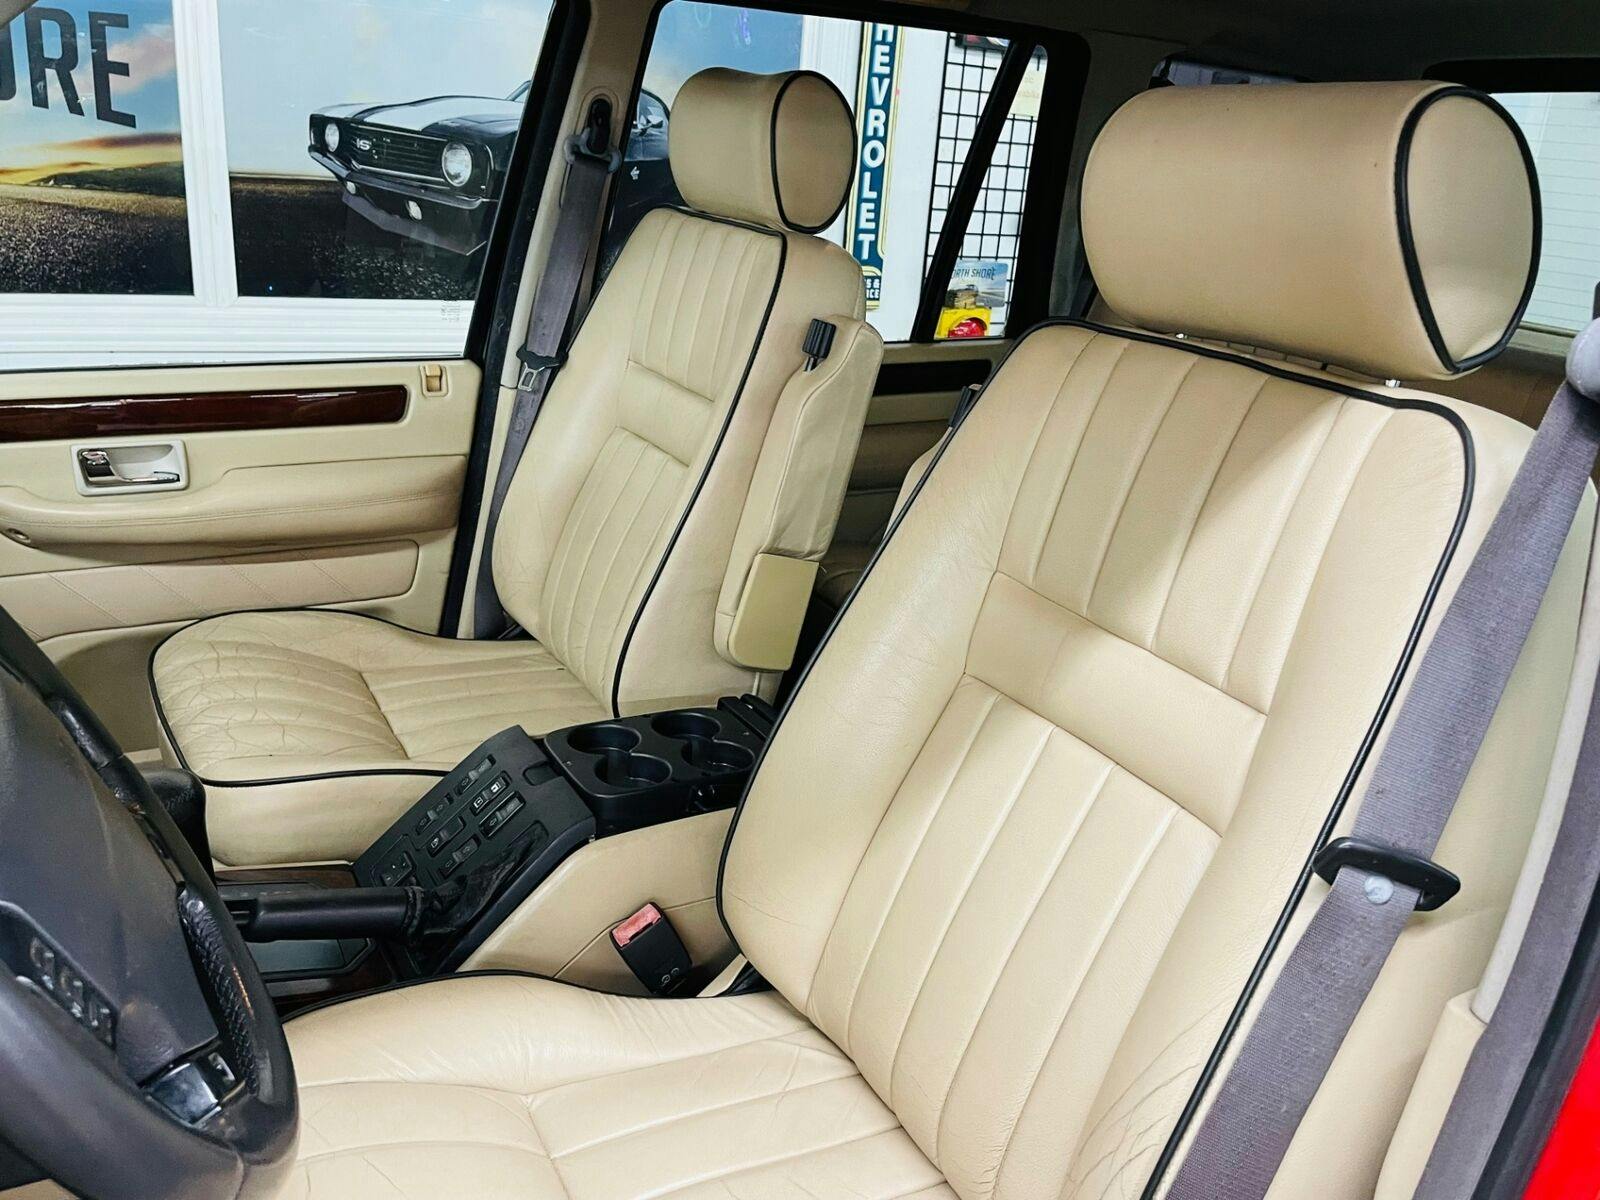 1999 Land Rover Range Rover interior seats